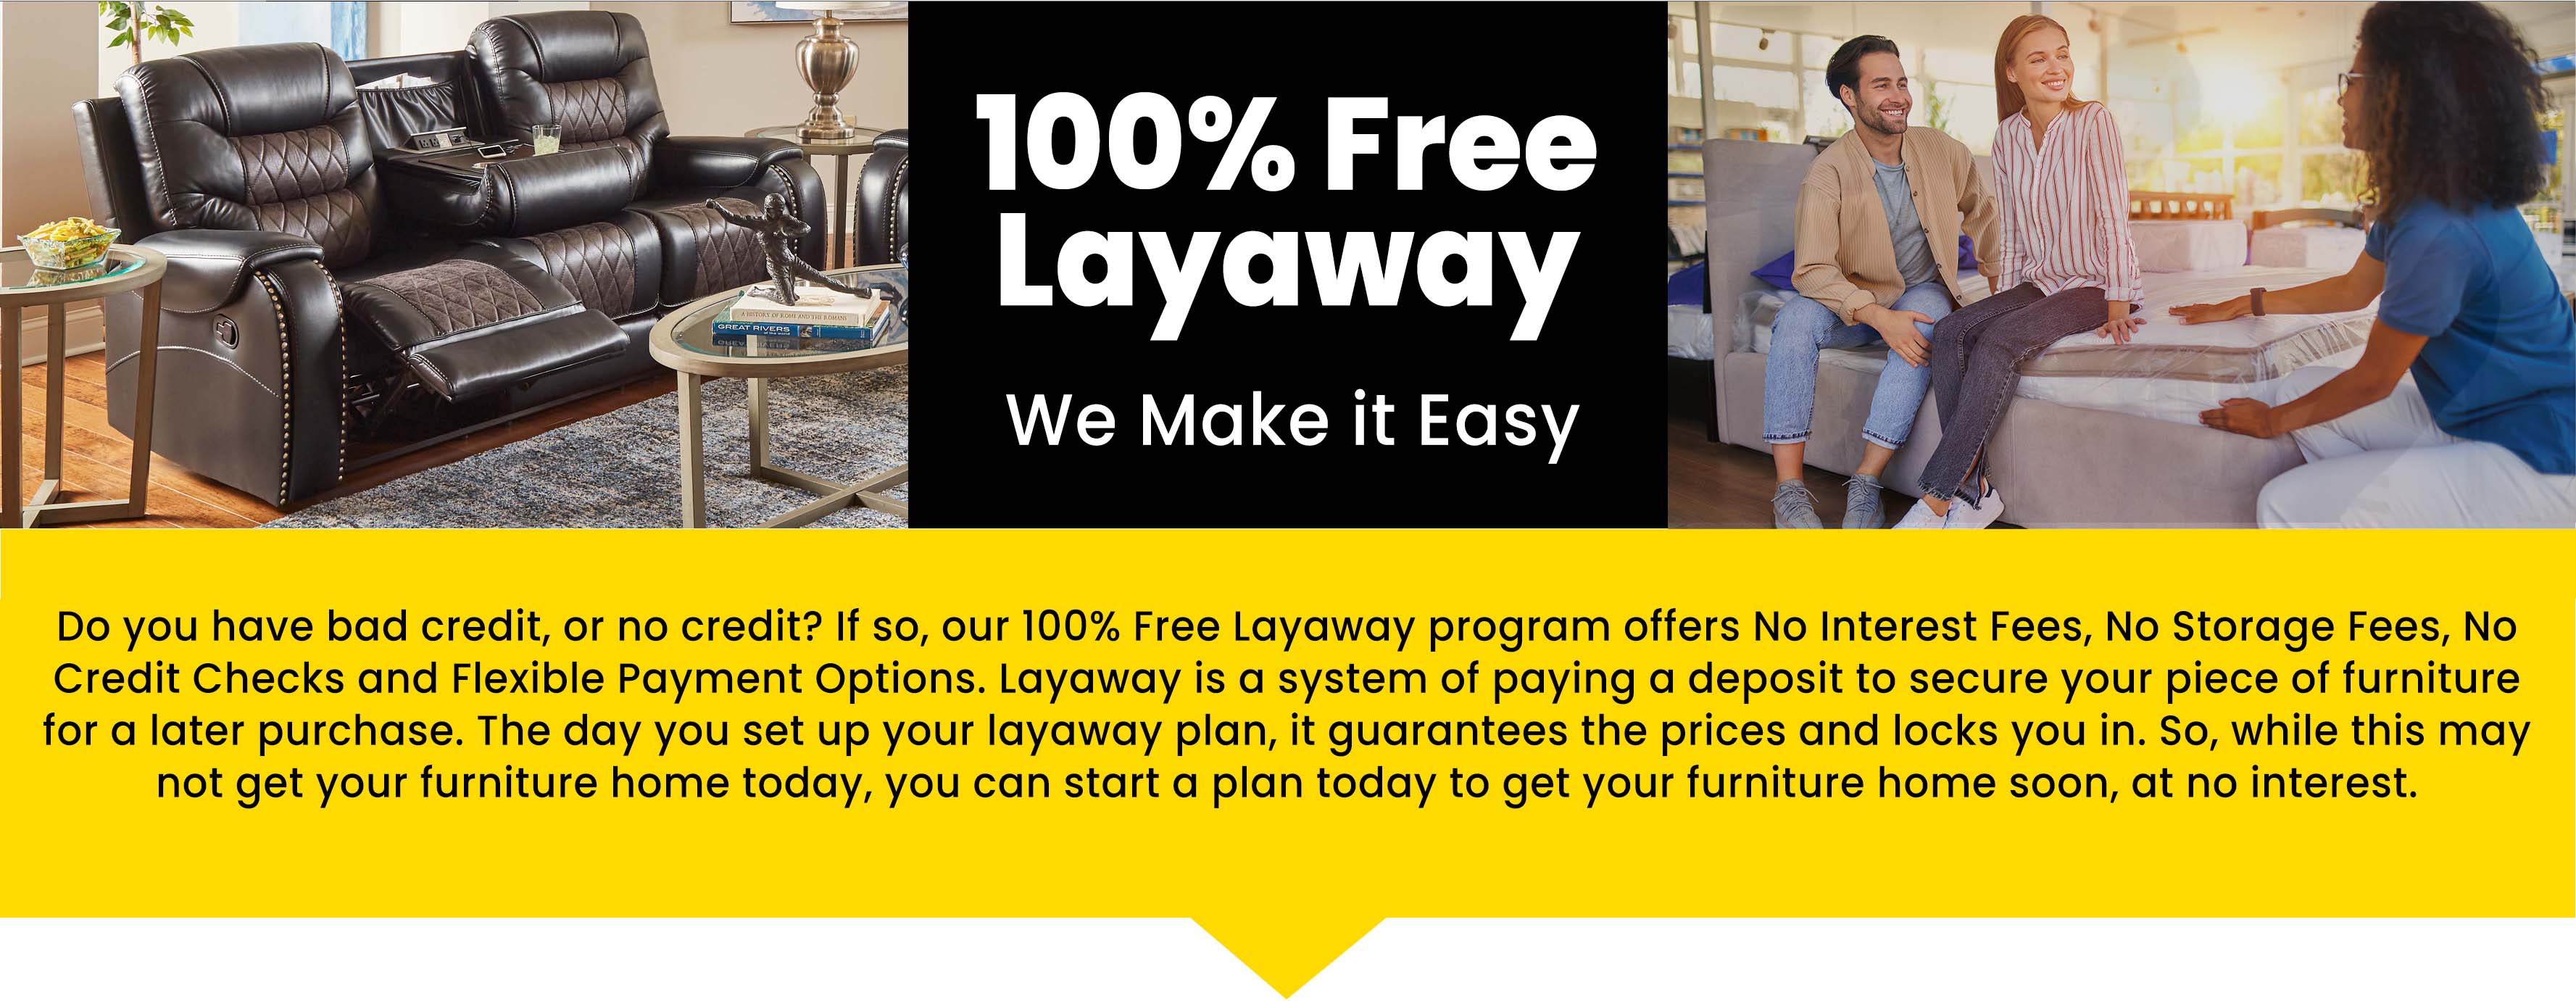 100% Free Layaway